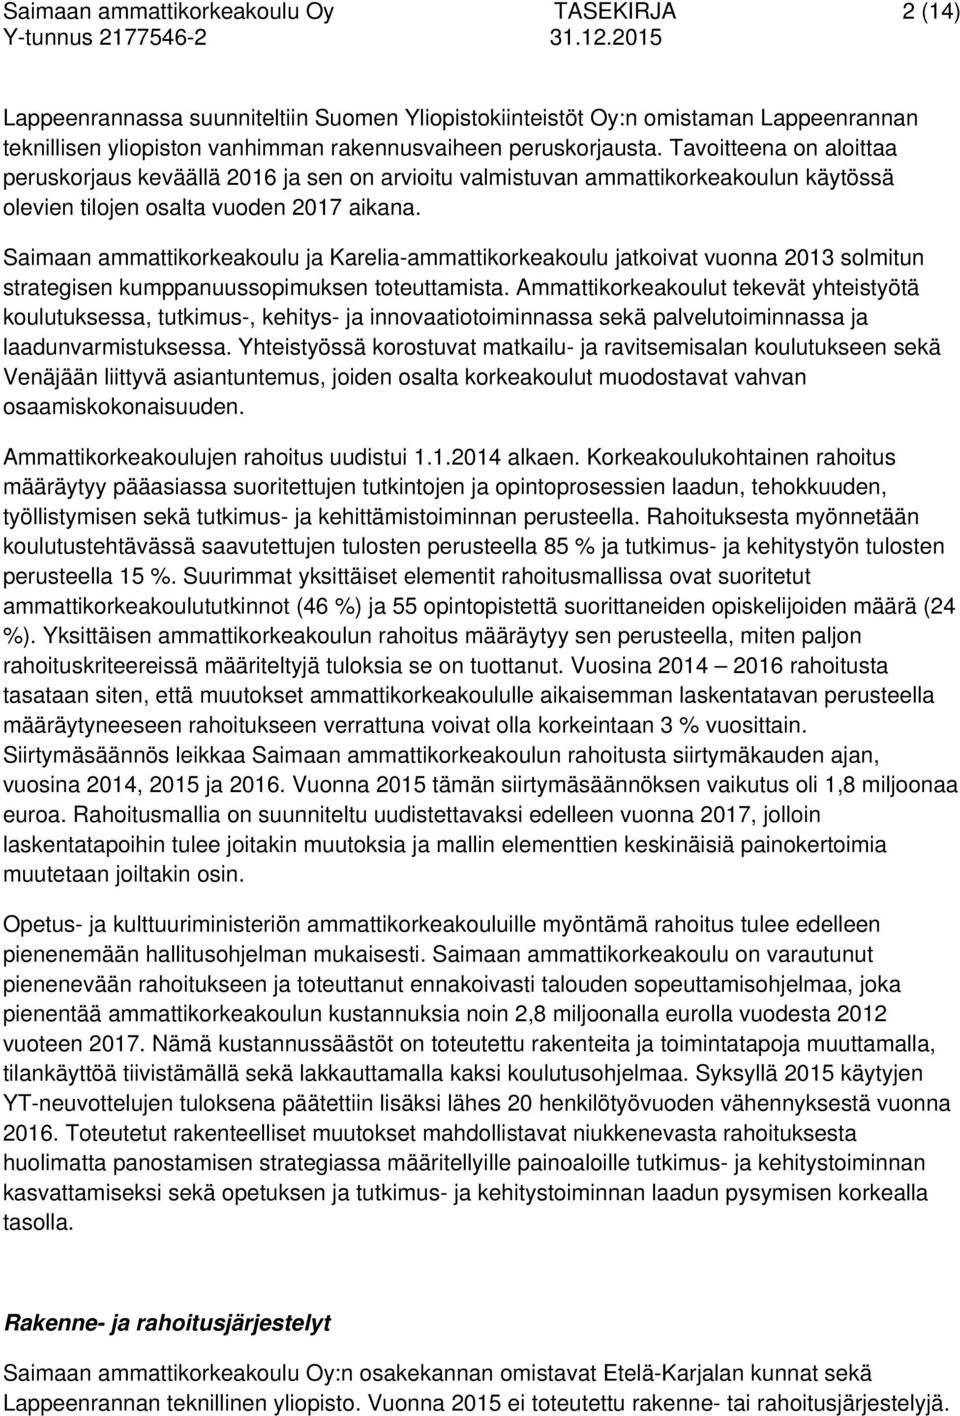 Saimaan ammattikorkeakoulu ja Karelia-ammattikorkeakoulu jatkoivat vuonna 2013 solmitun strategisen kumppanuussopimuksen toteuttamista.